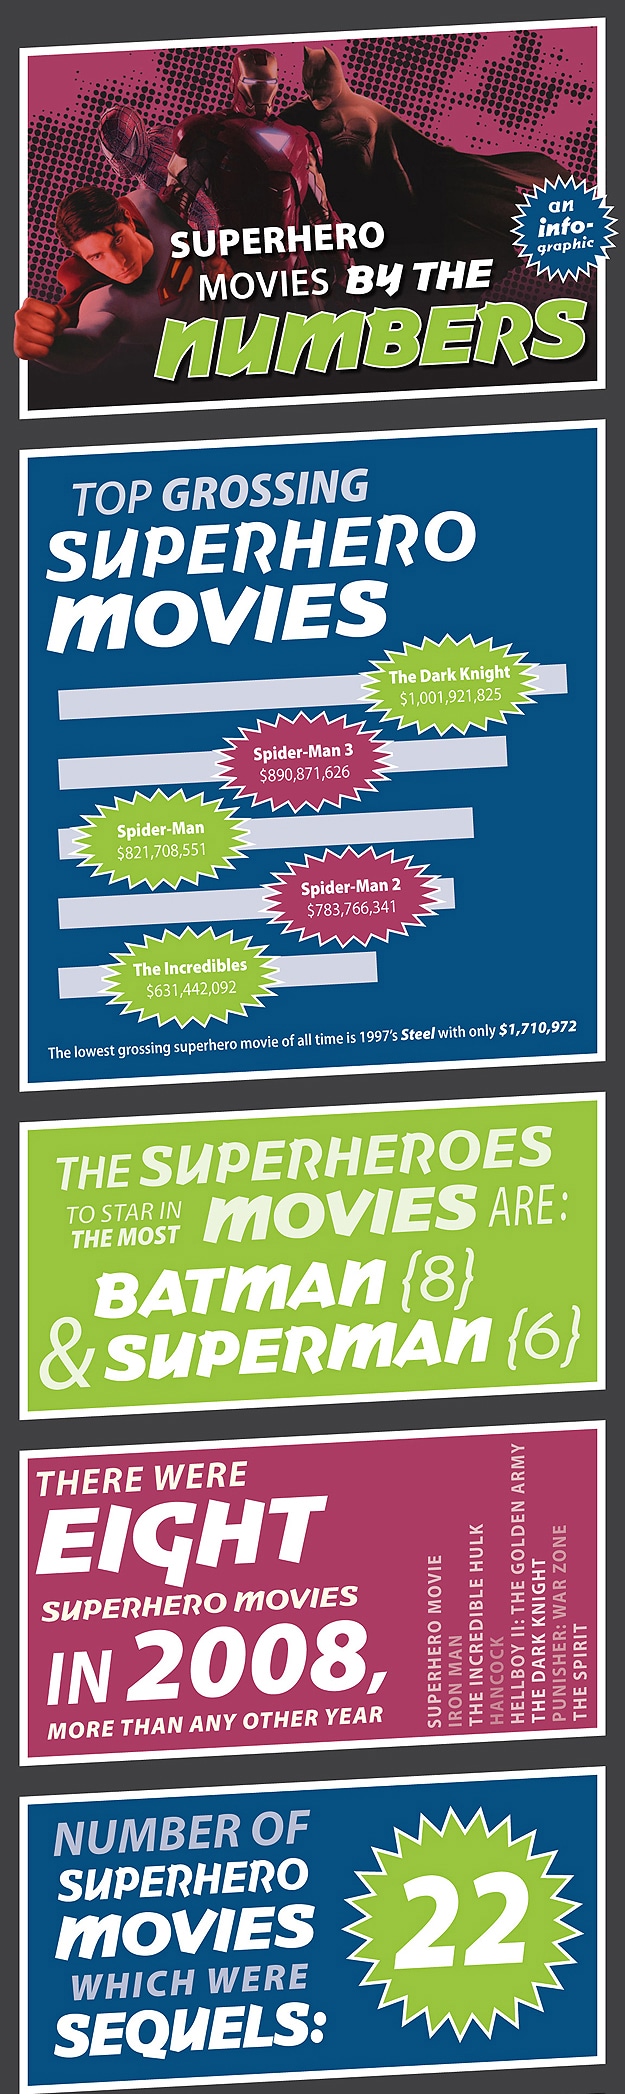 Superhero Movies Made Most Money